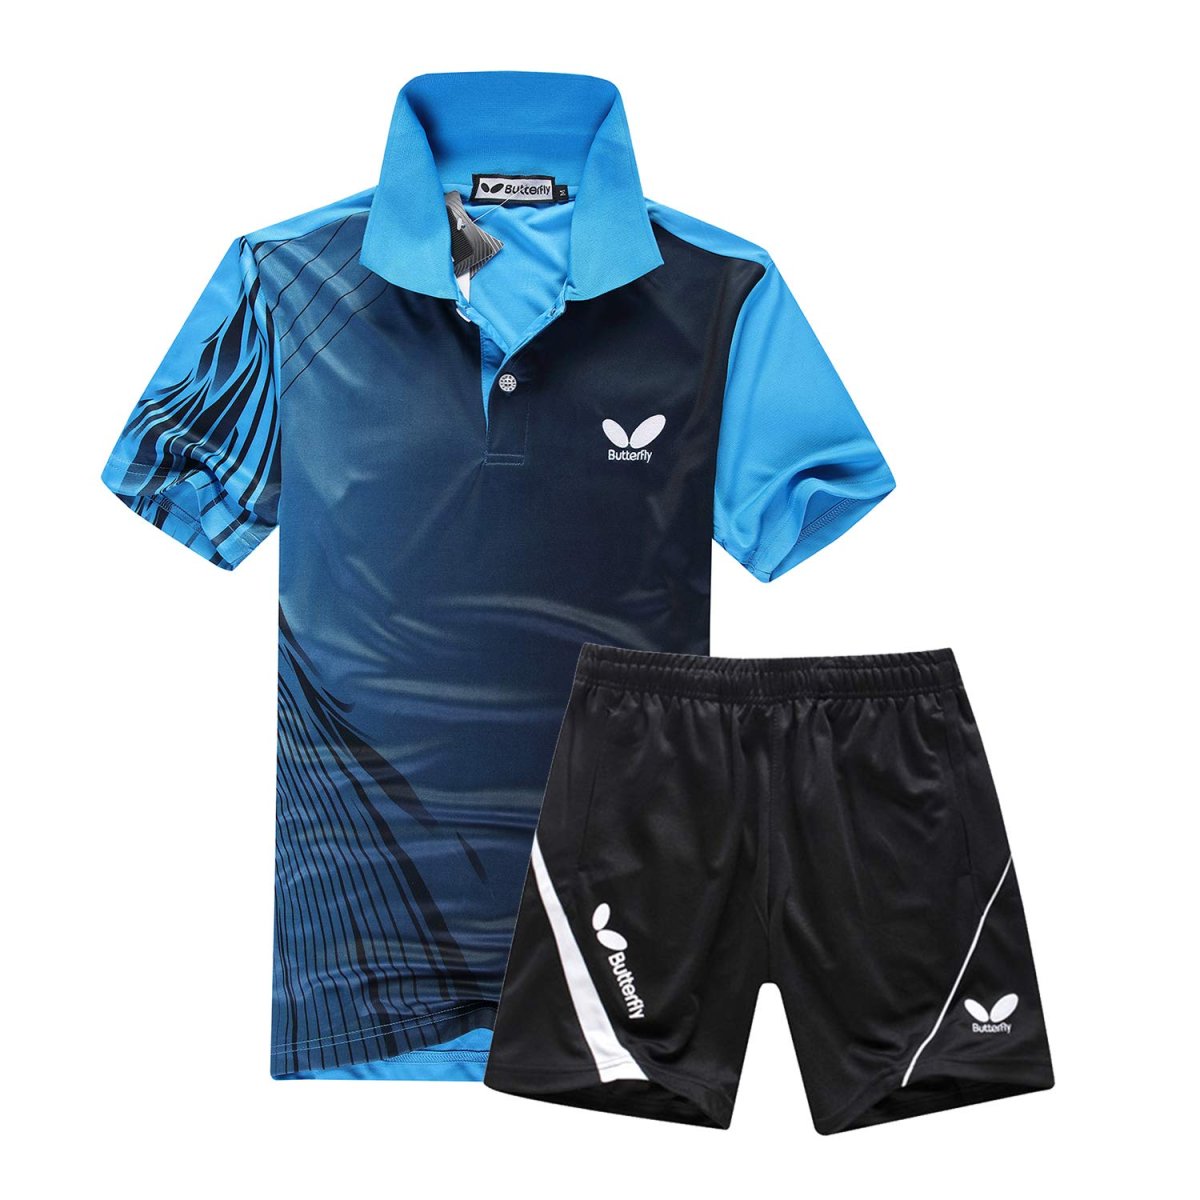 Спортивная одежда Баттерфляй для настольного тенниса